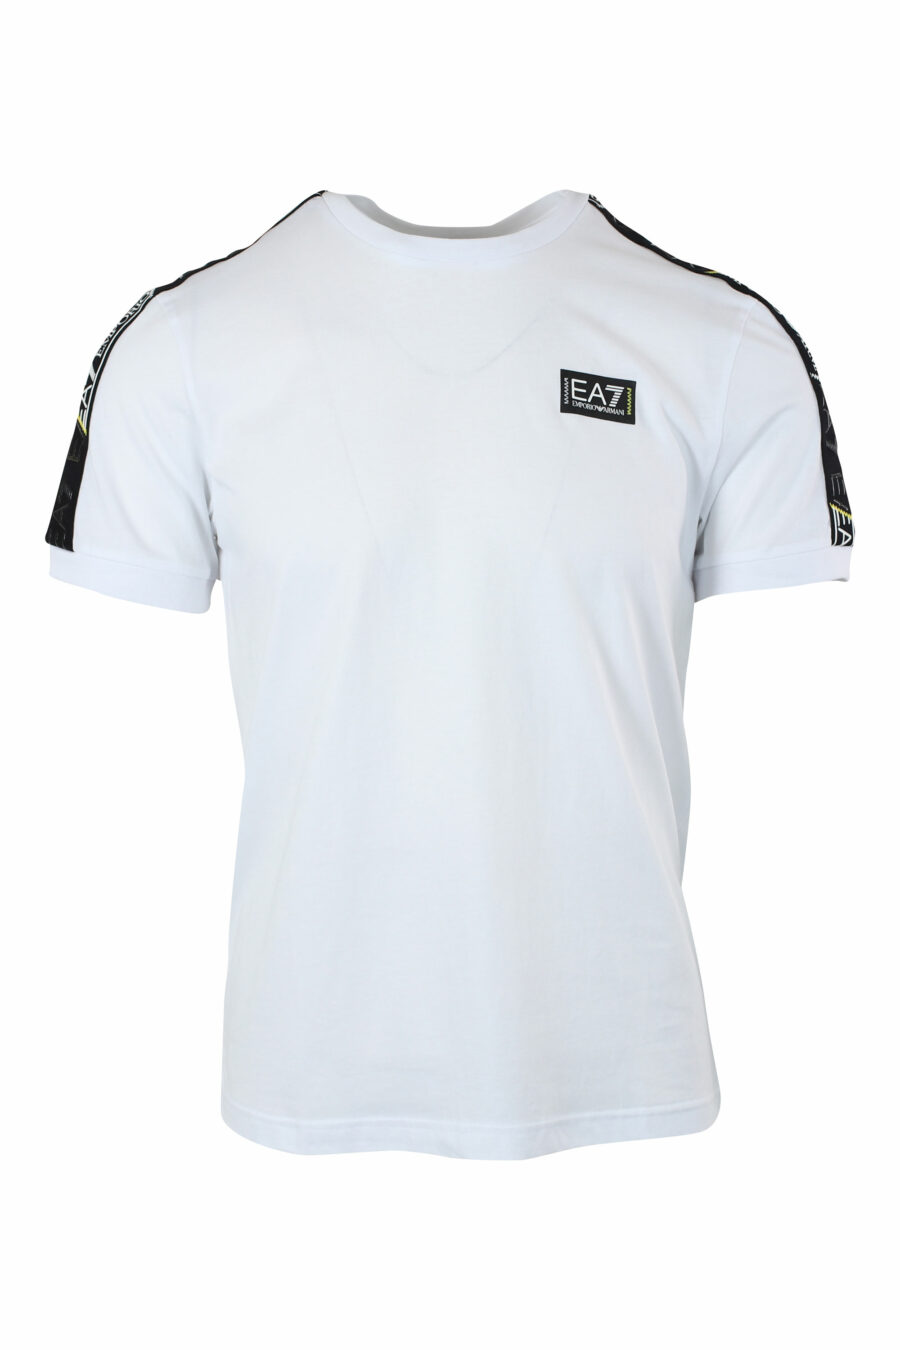 Camiseta blanca con logo en cinta en hombro y minilogo negro - IMG 9642